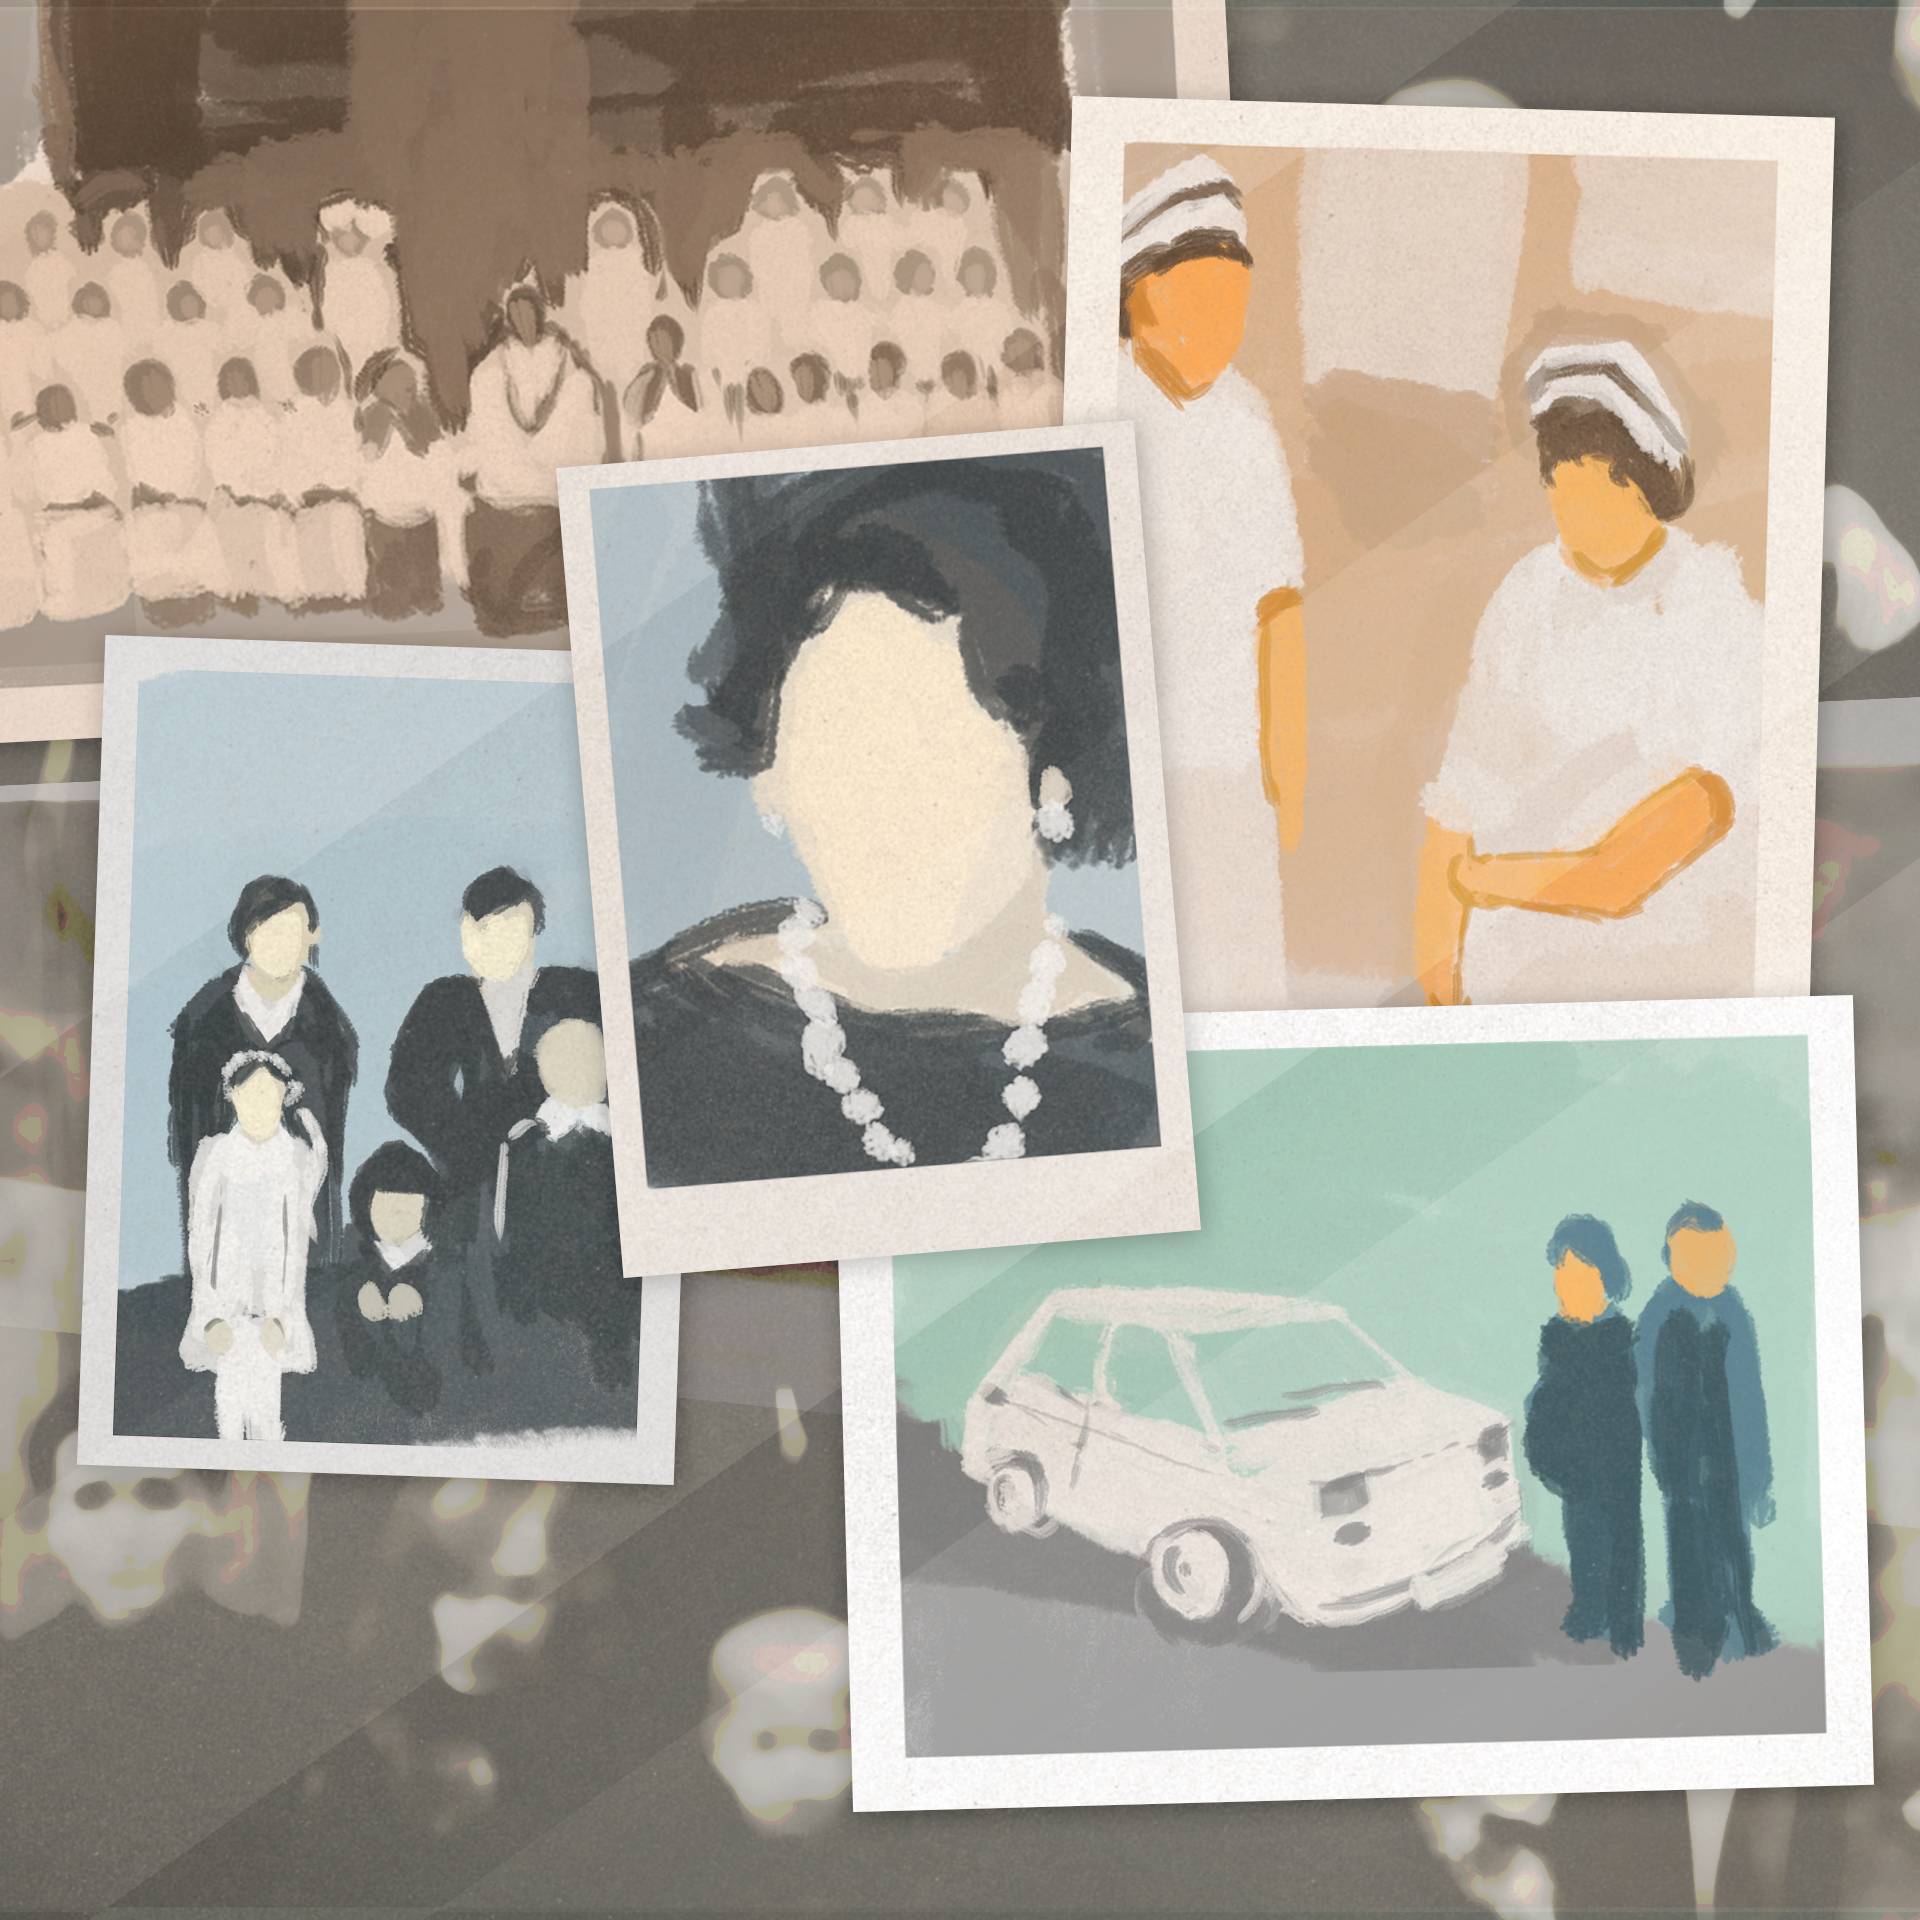 Malarstwo cyfrowe: obraz przedstawia kilka zdjęć przedstawiających m.in. stare grupowe zdjęcie z komunii, stare zdjęcie rodzinne, fotografię młodych pielęgniarek, parę obok Fiata 126p